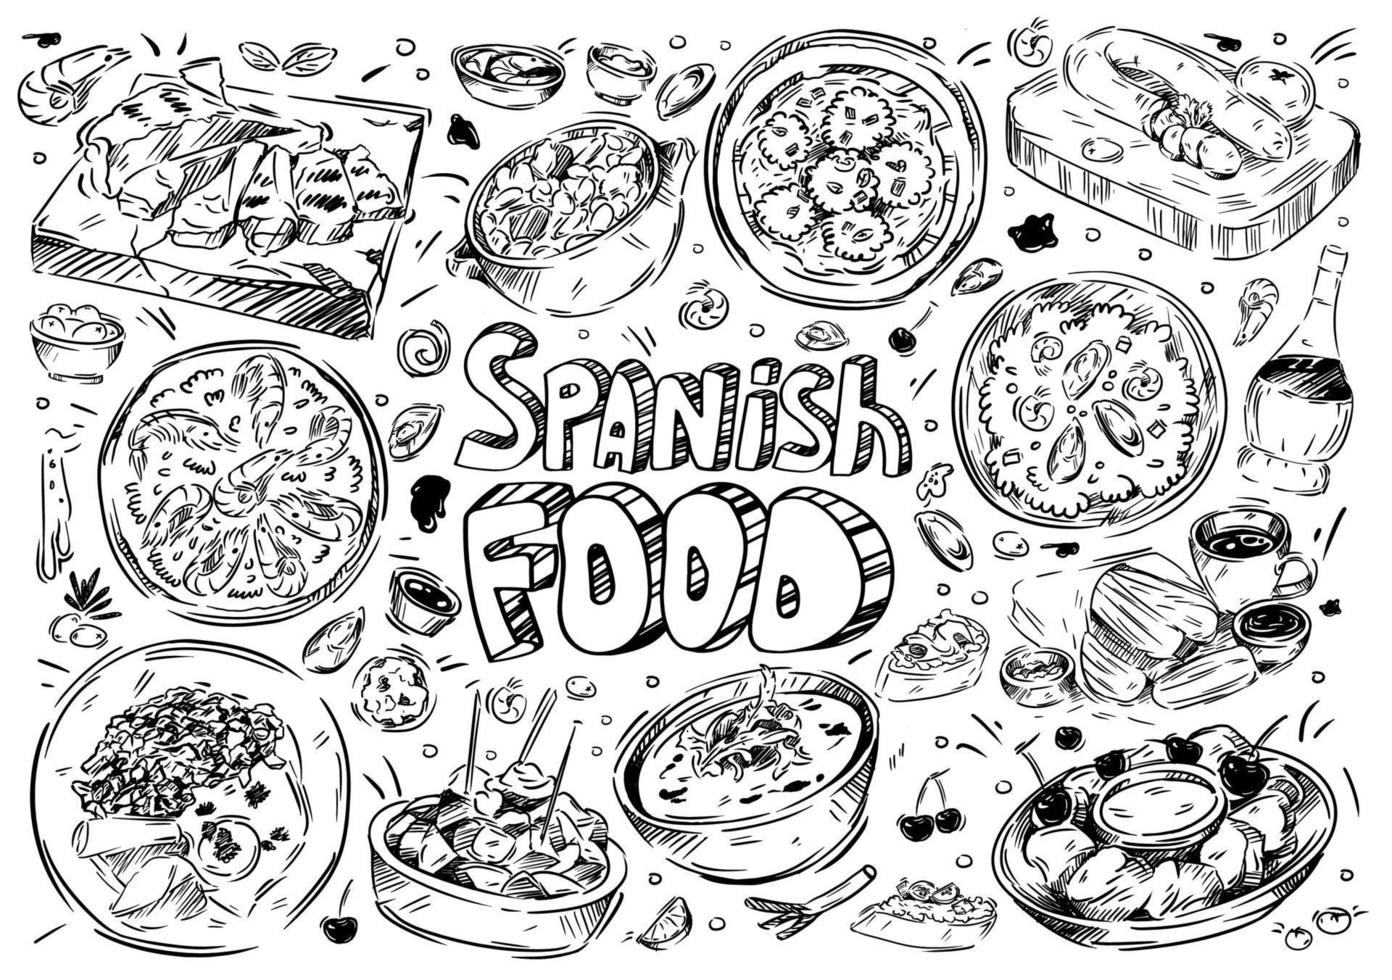 illustrazione vettoriale disegnata a mano. scarabocchiare cibo spagnolo, gazpacho, fabada, paella, patatas bravas, chorizo, leche frita, churros, vino, tapas, gamberi all'aglio, allioli, albondigas